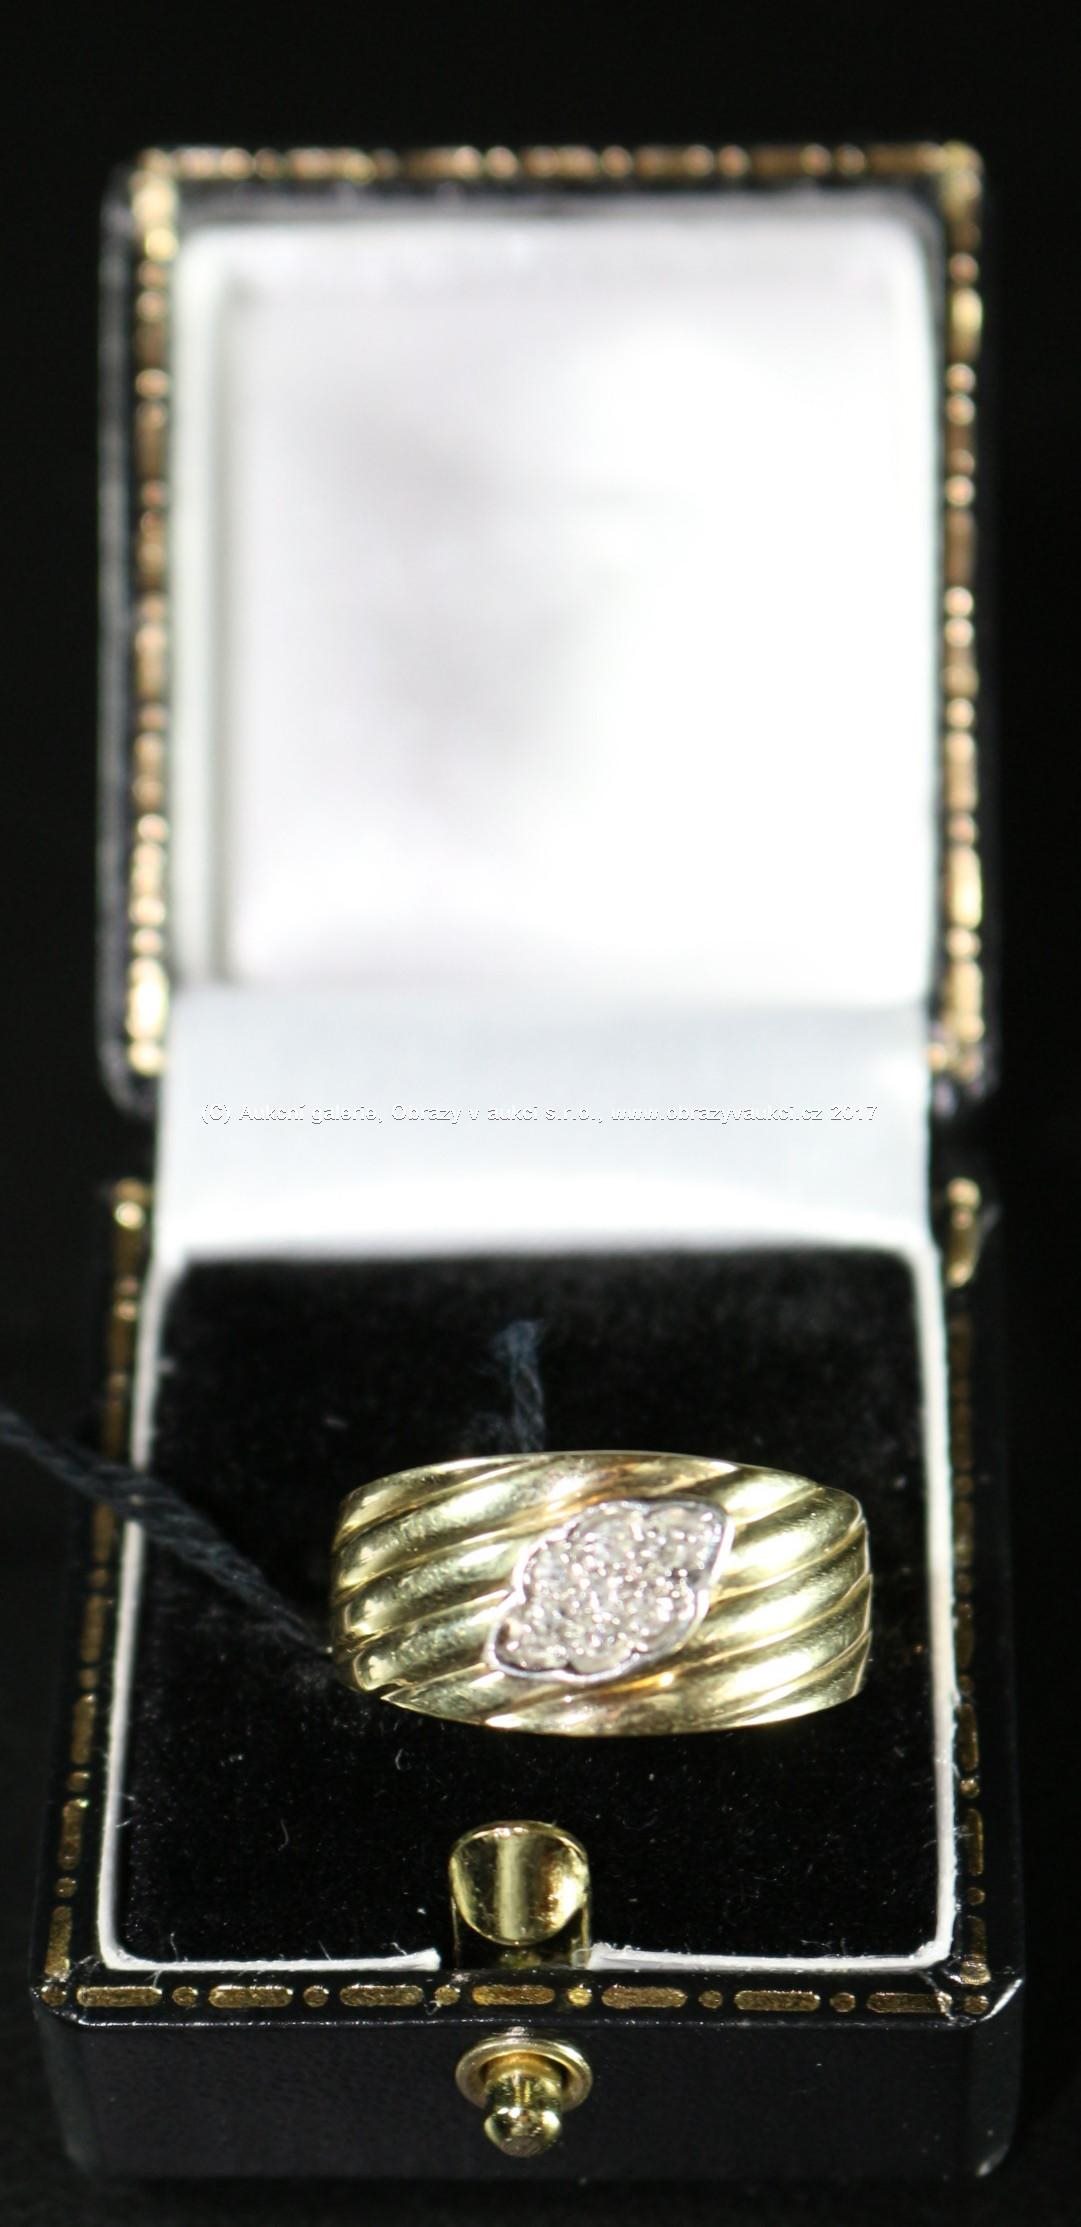 Zlatý prsten - Žluté zlato 585/1000, punc labuť 4, hrubá hmotnost: 4,60 g